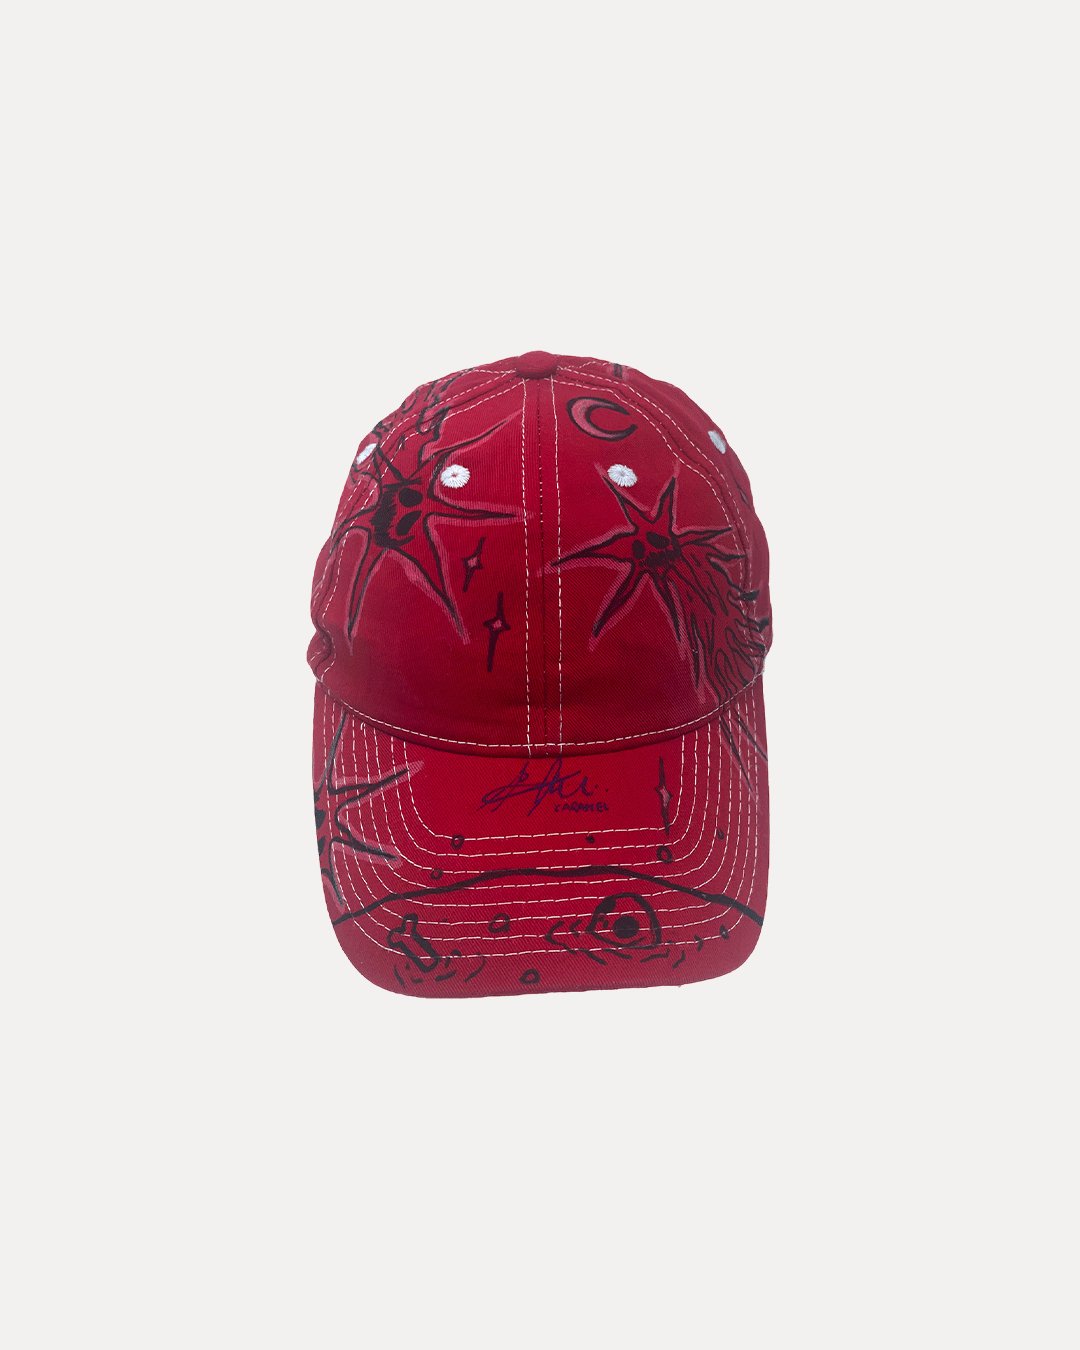 1/1 Red Acabs Cap